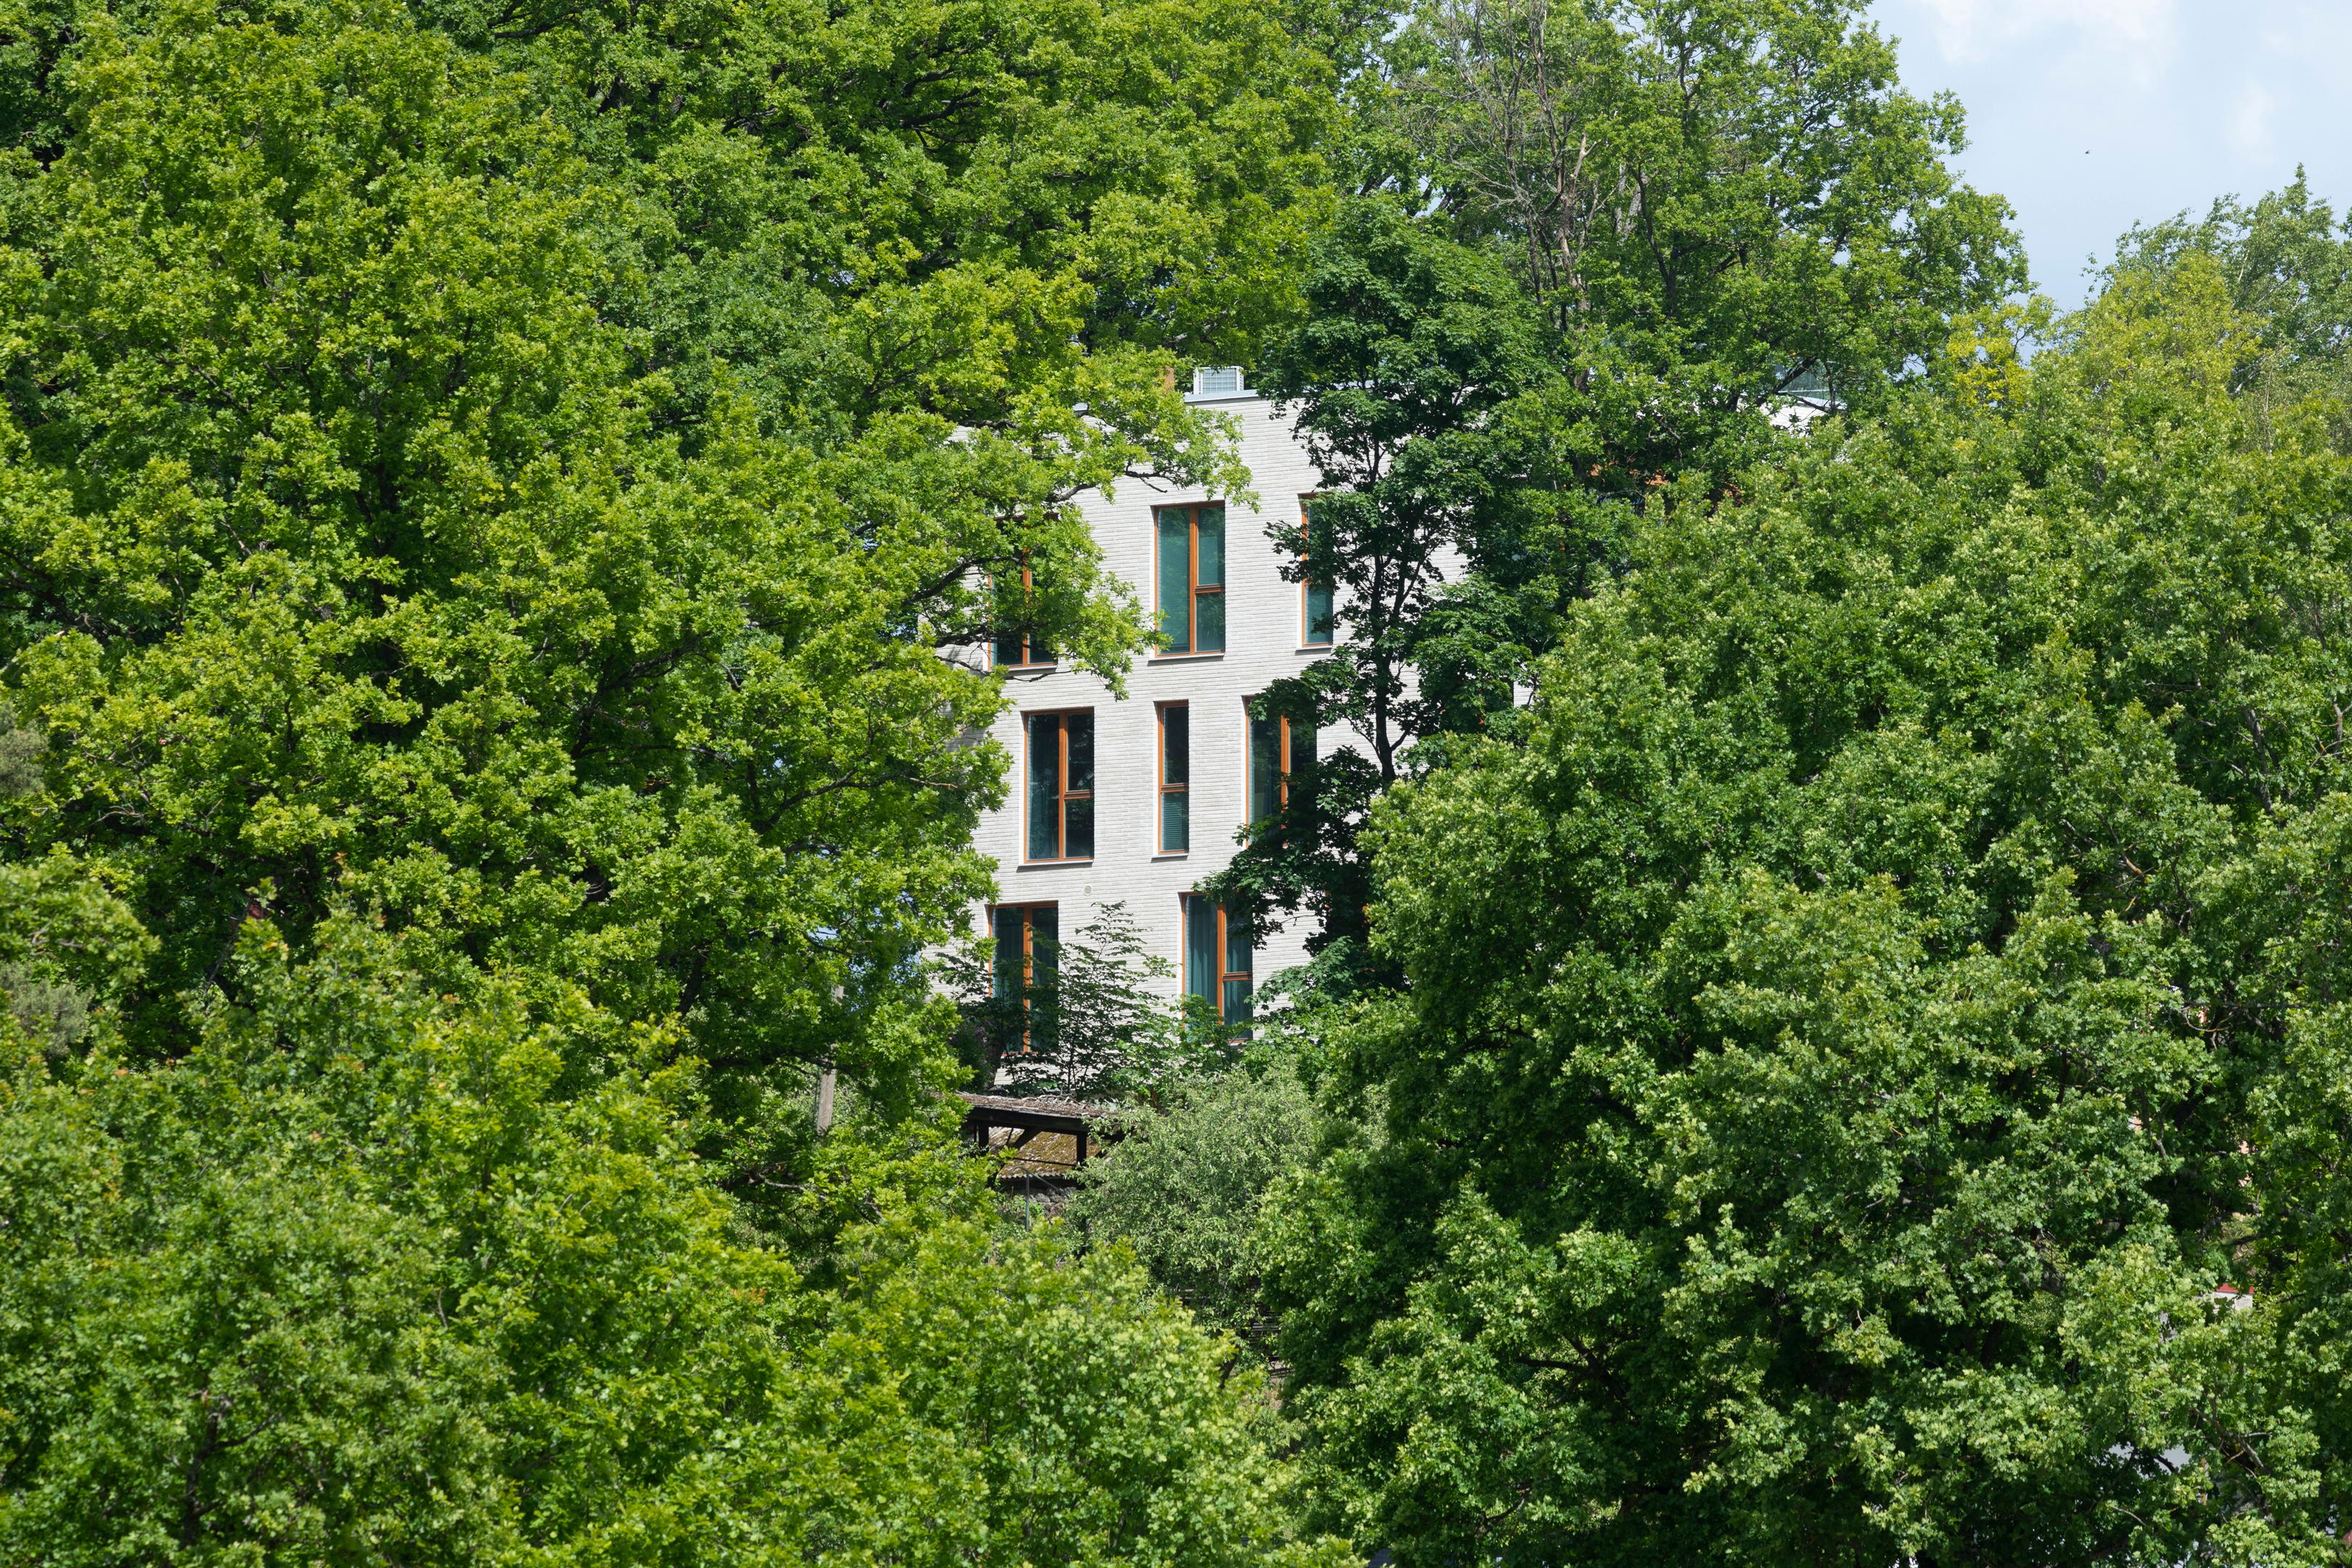 Oru villa in the greenery of Viljandi town